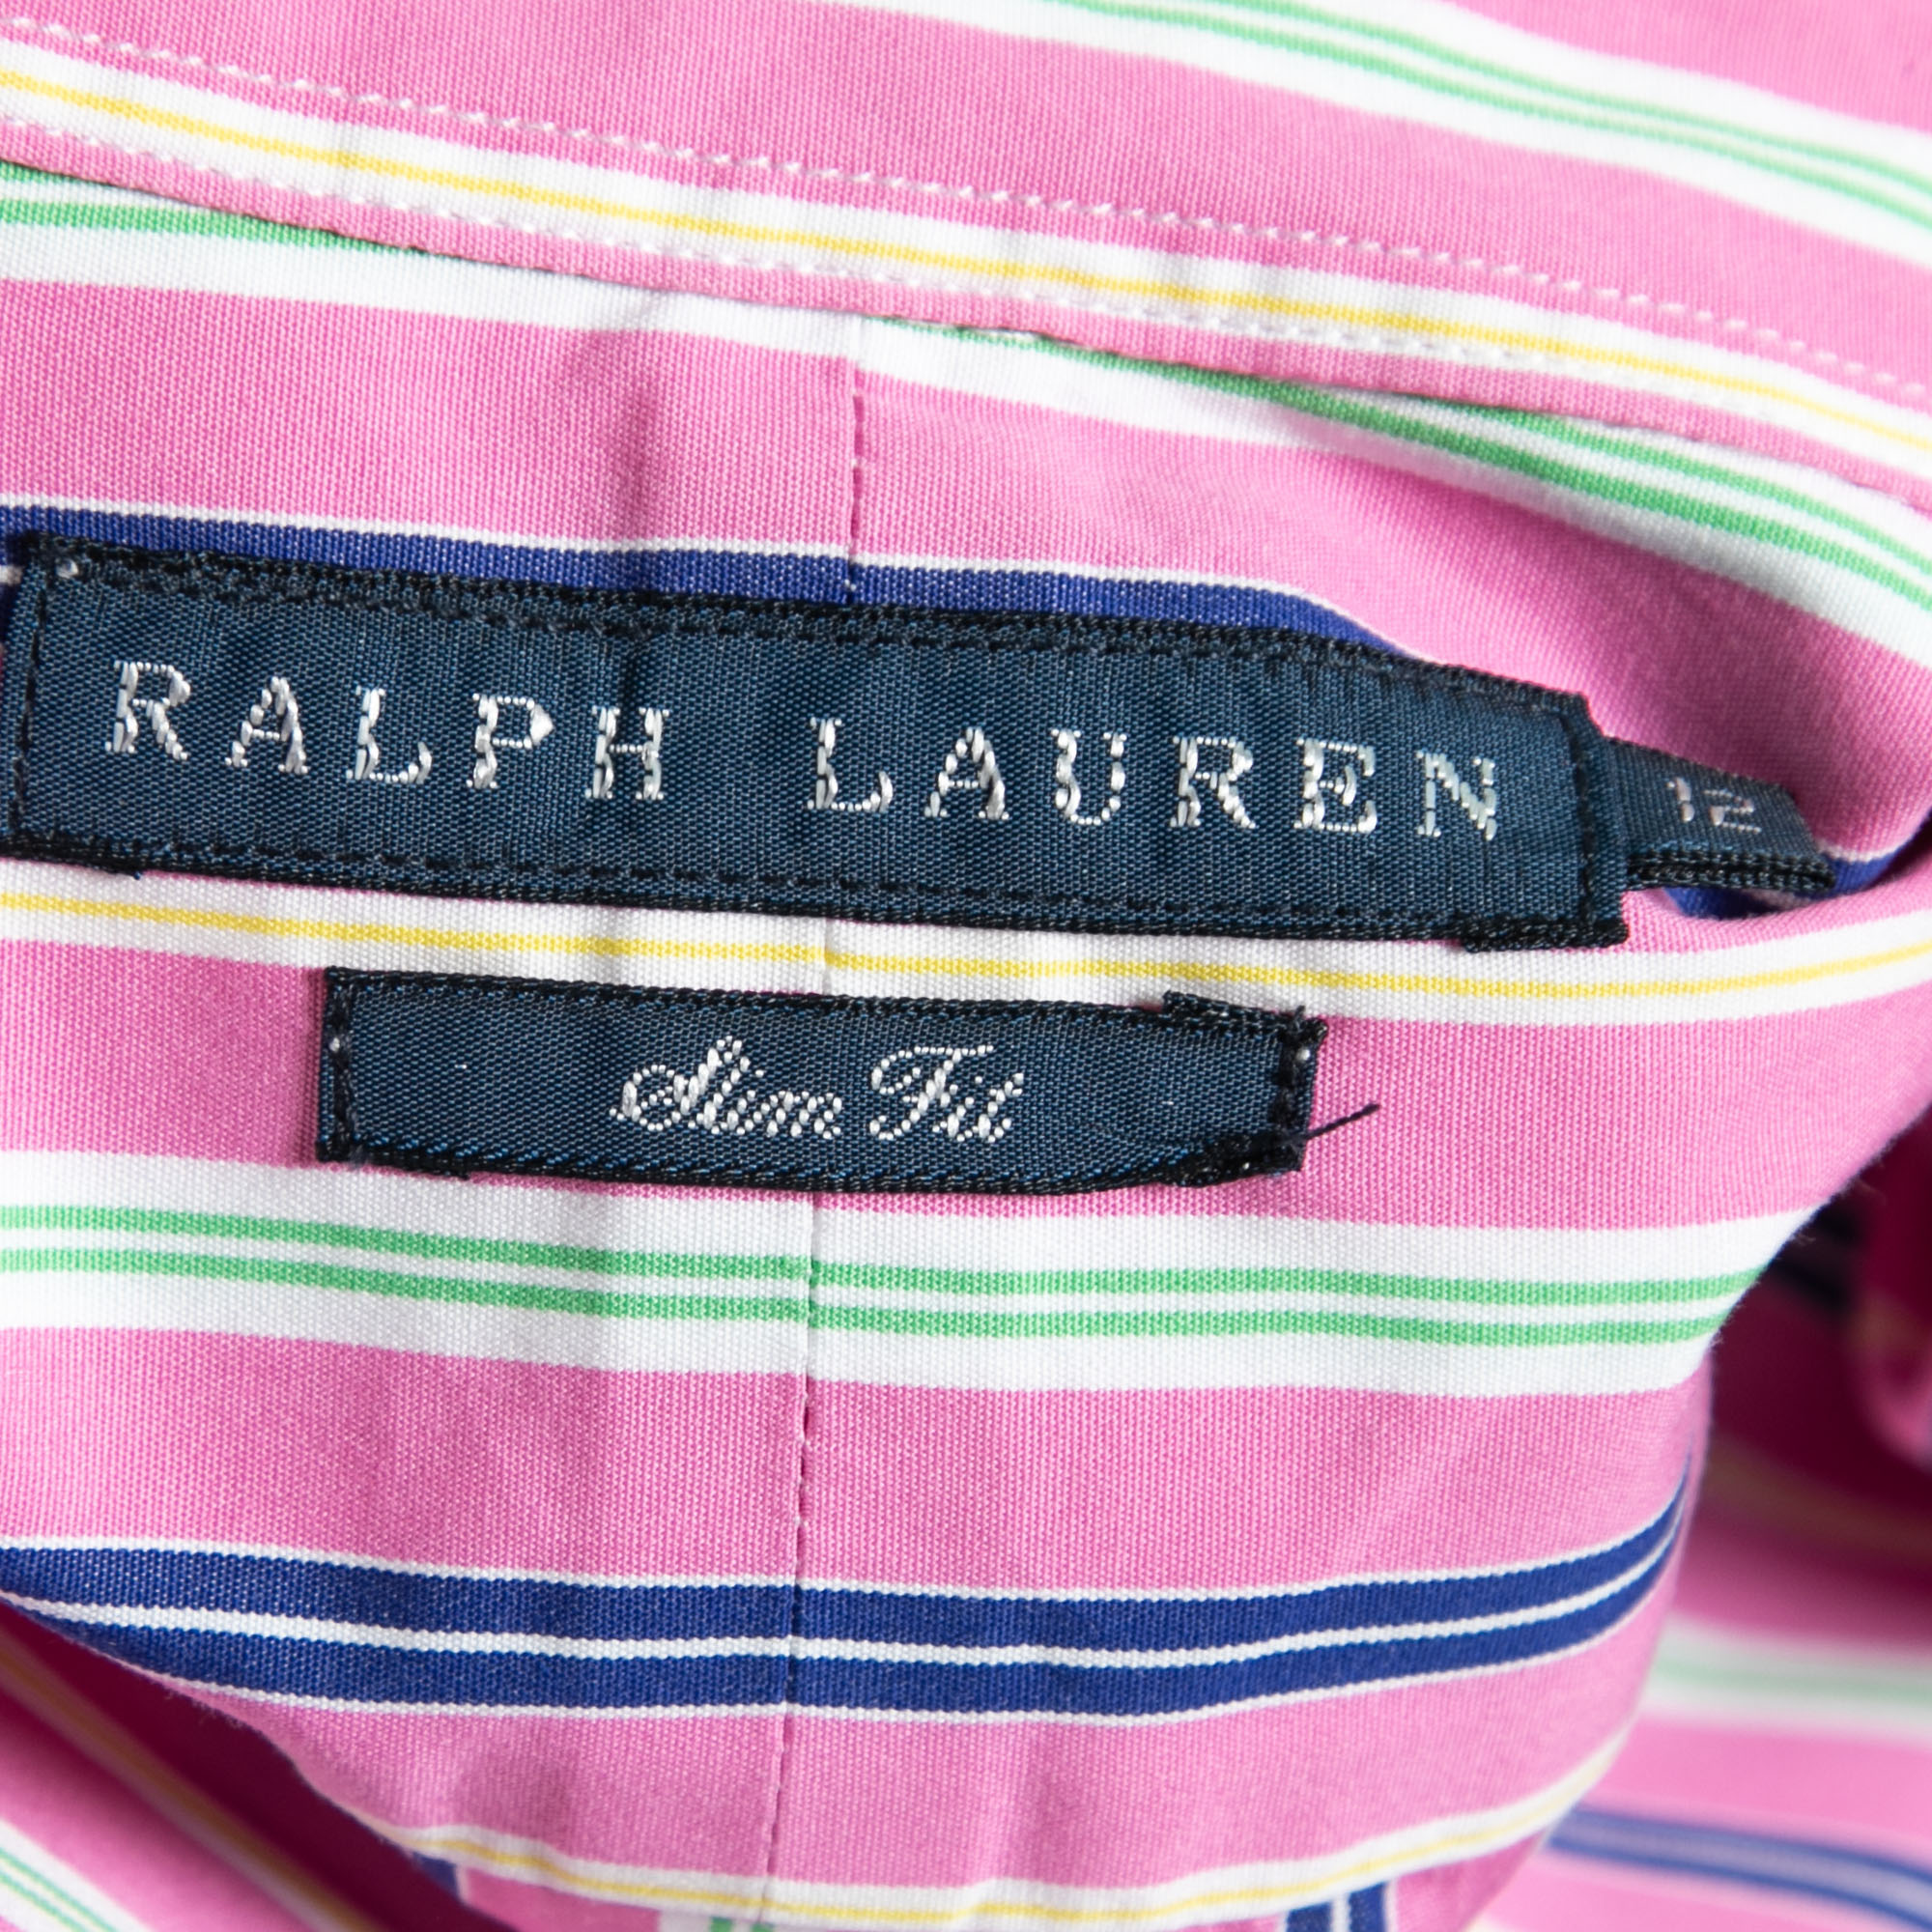 Ralph Lauren Pink Striped Cotton Slim Fit Button Front Shirt L